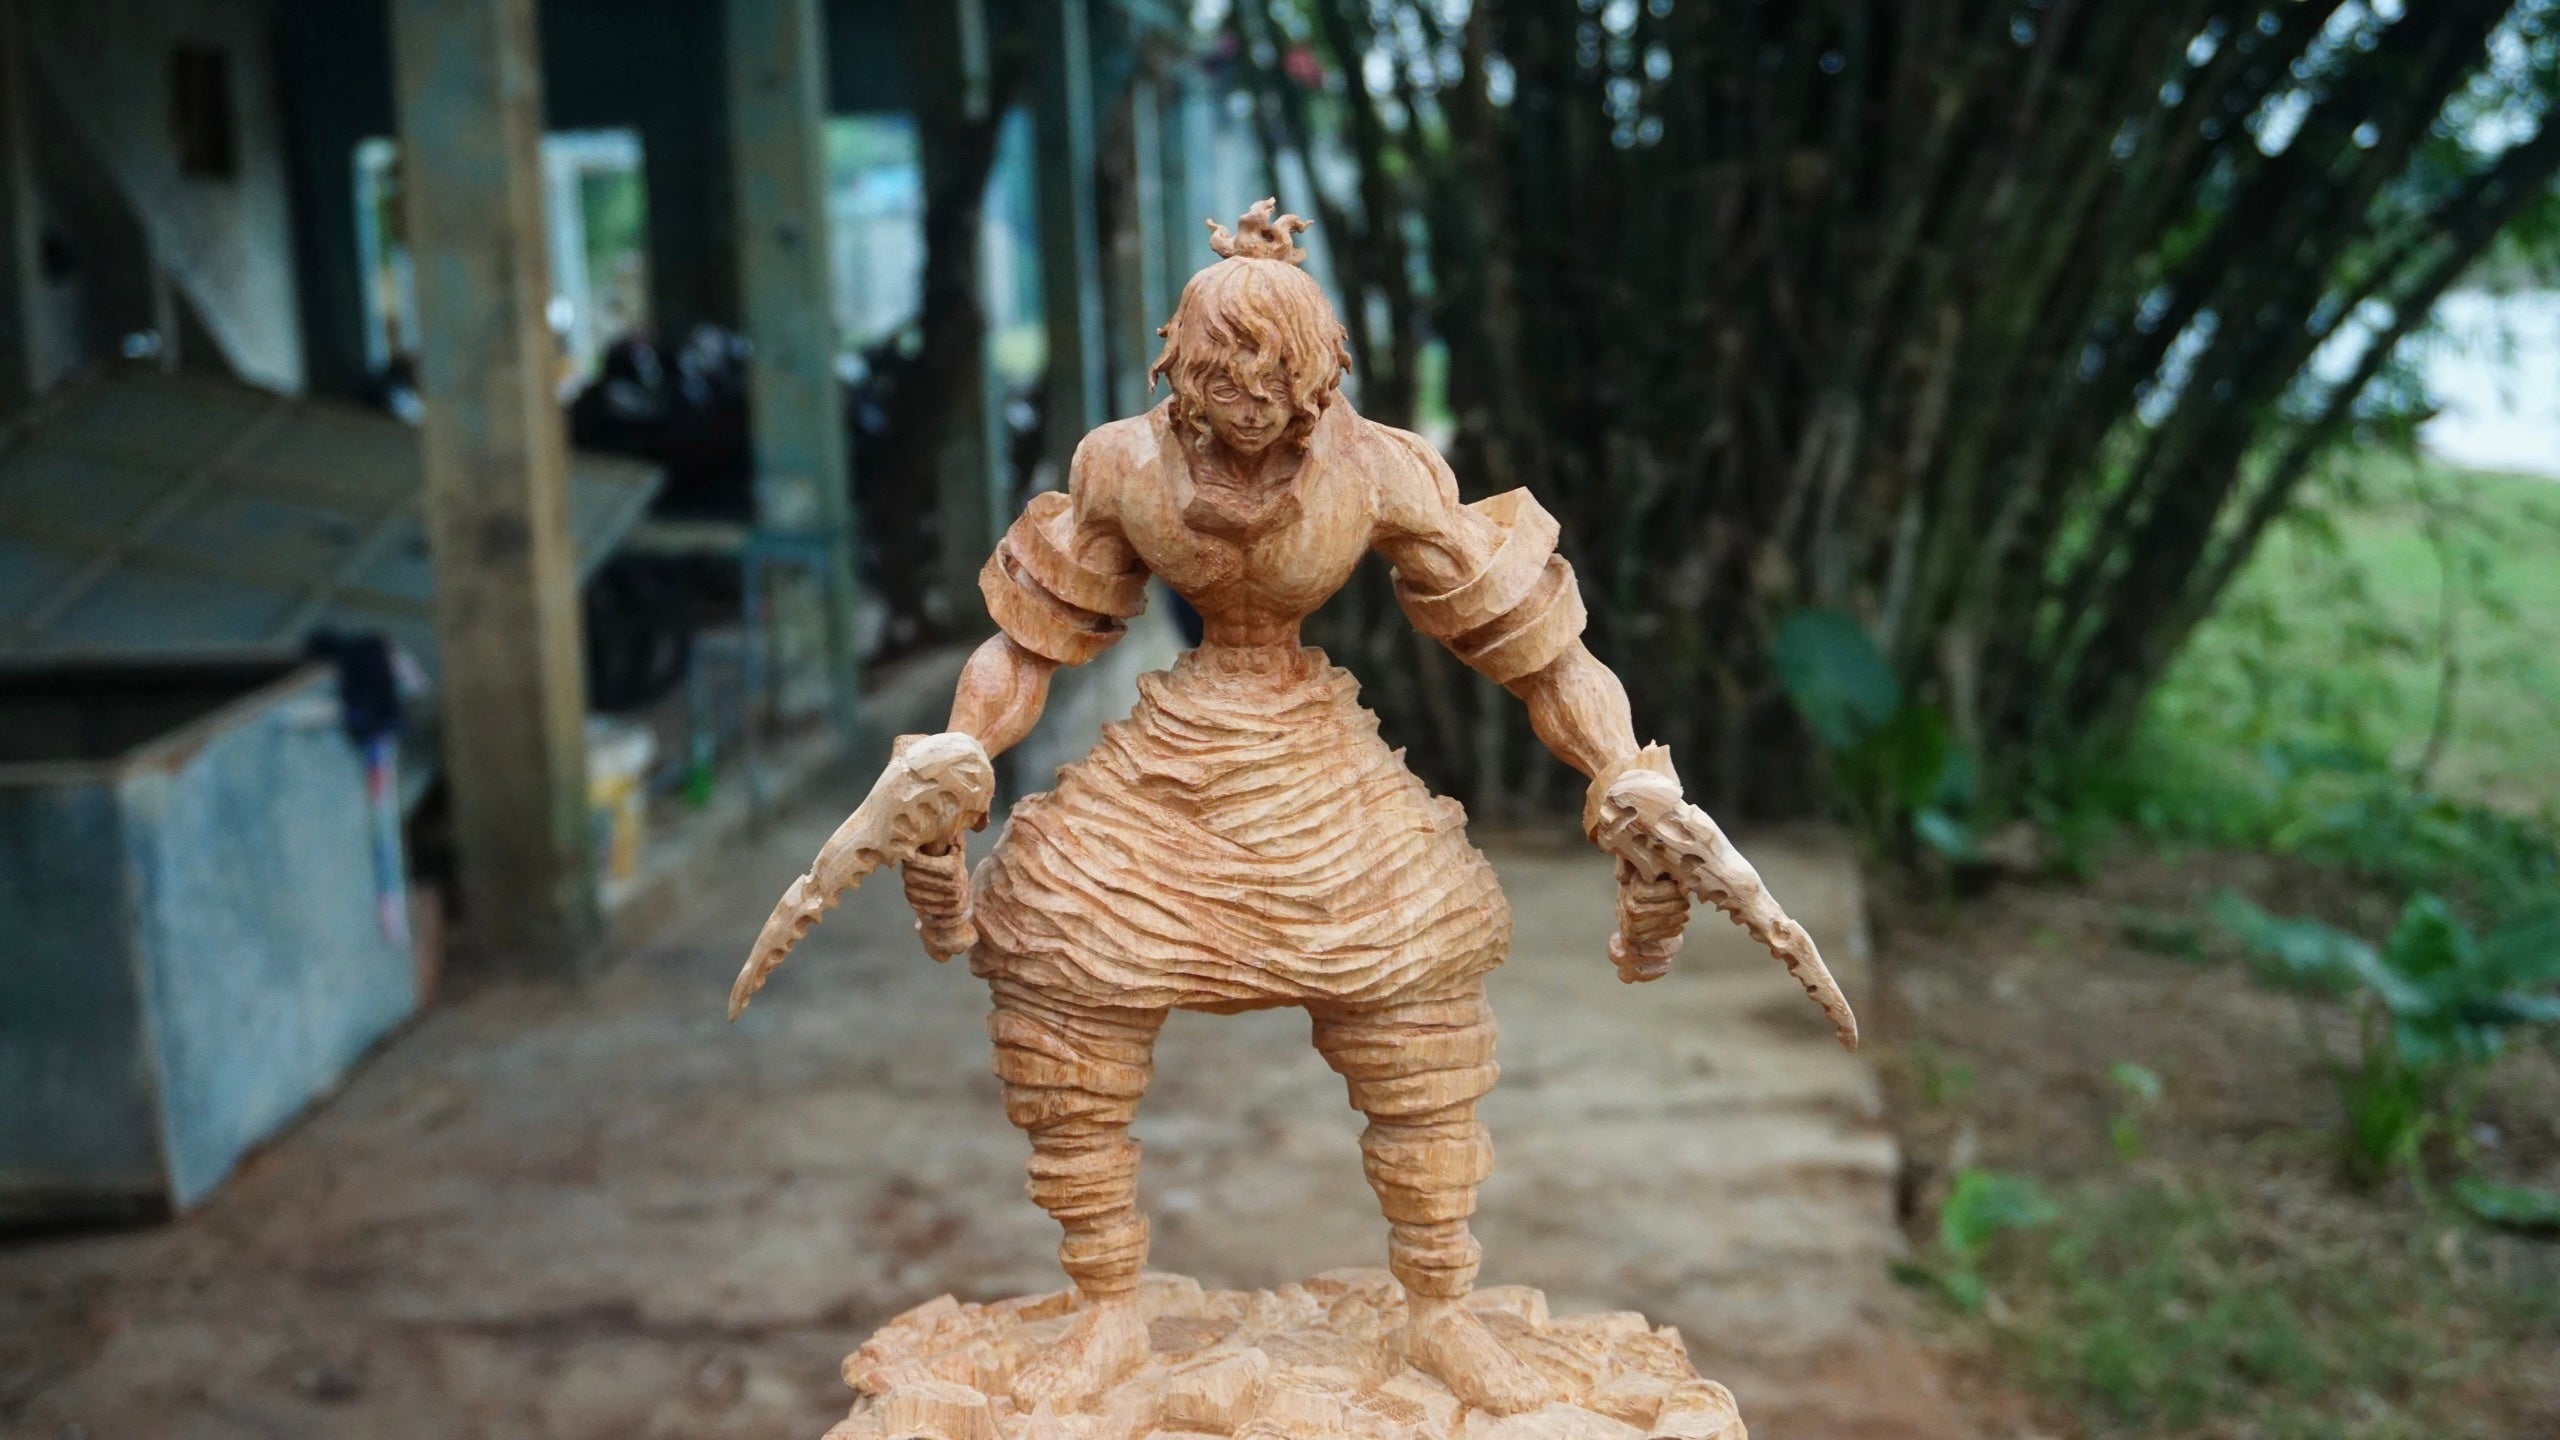 Gyutaro Figure Wood Carving - Demon slayer